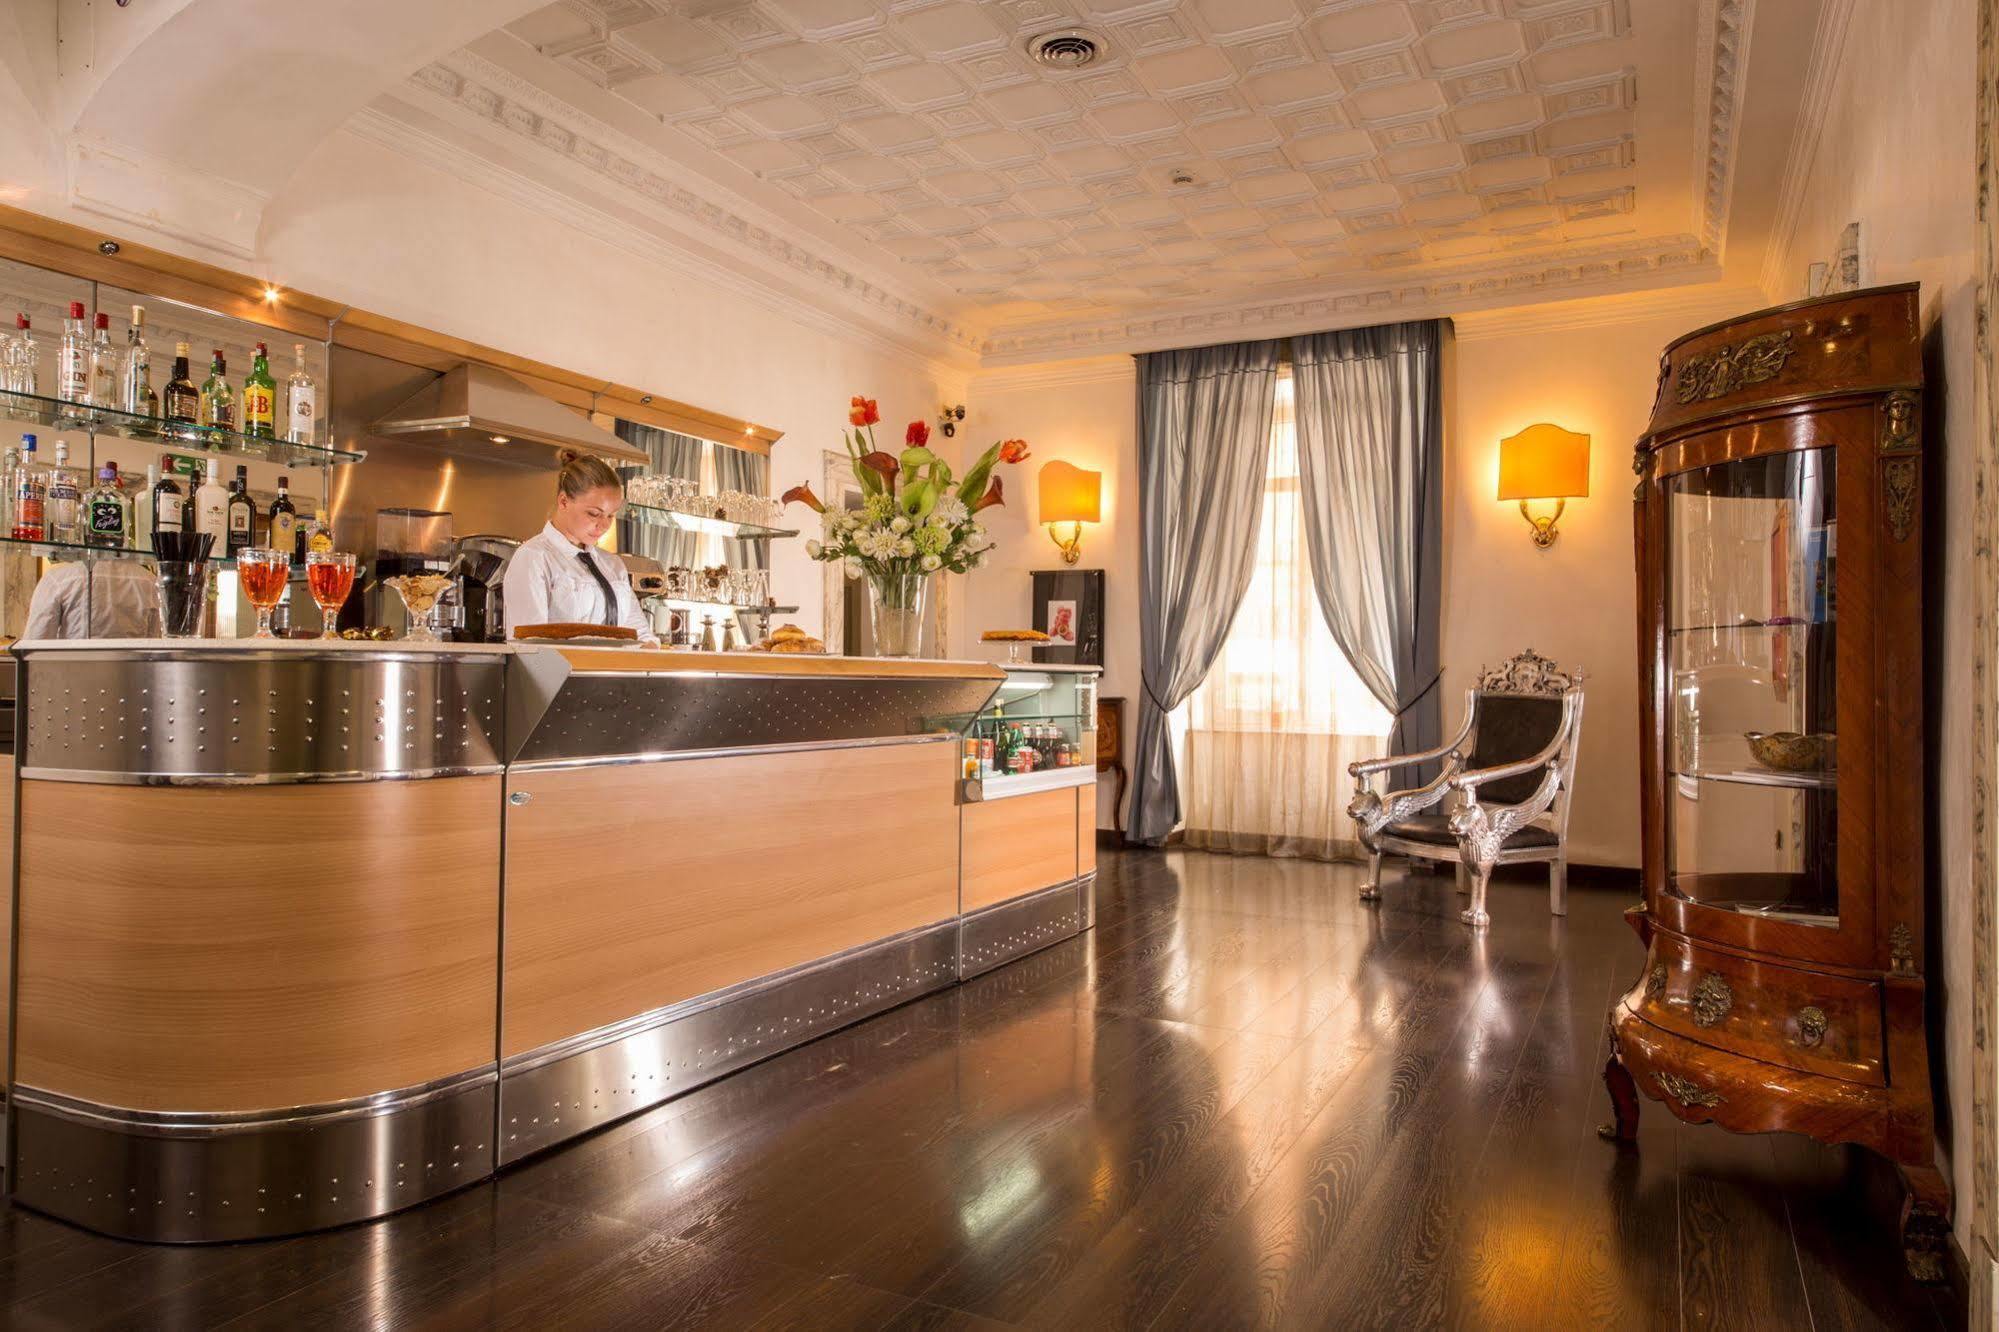 Hotel Nizza Rome Luaran gambar